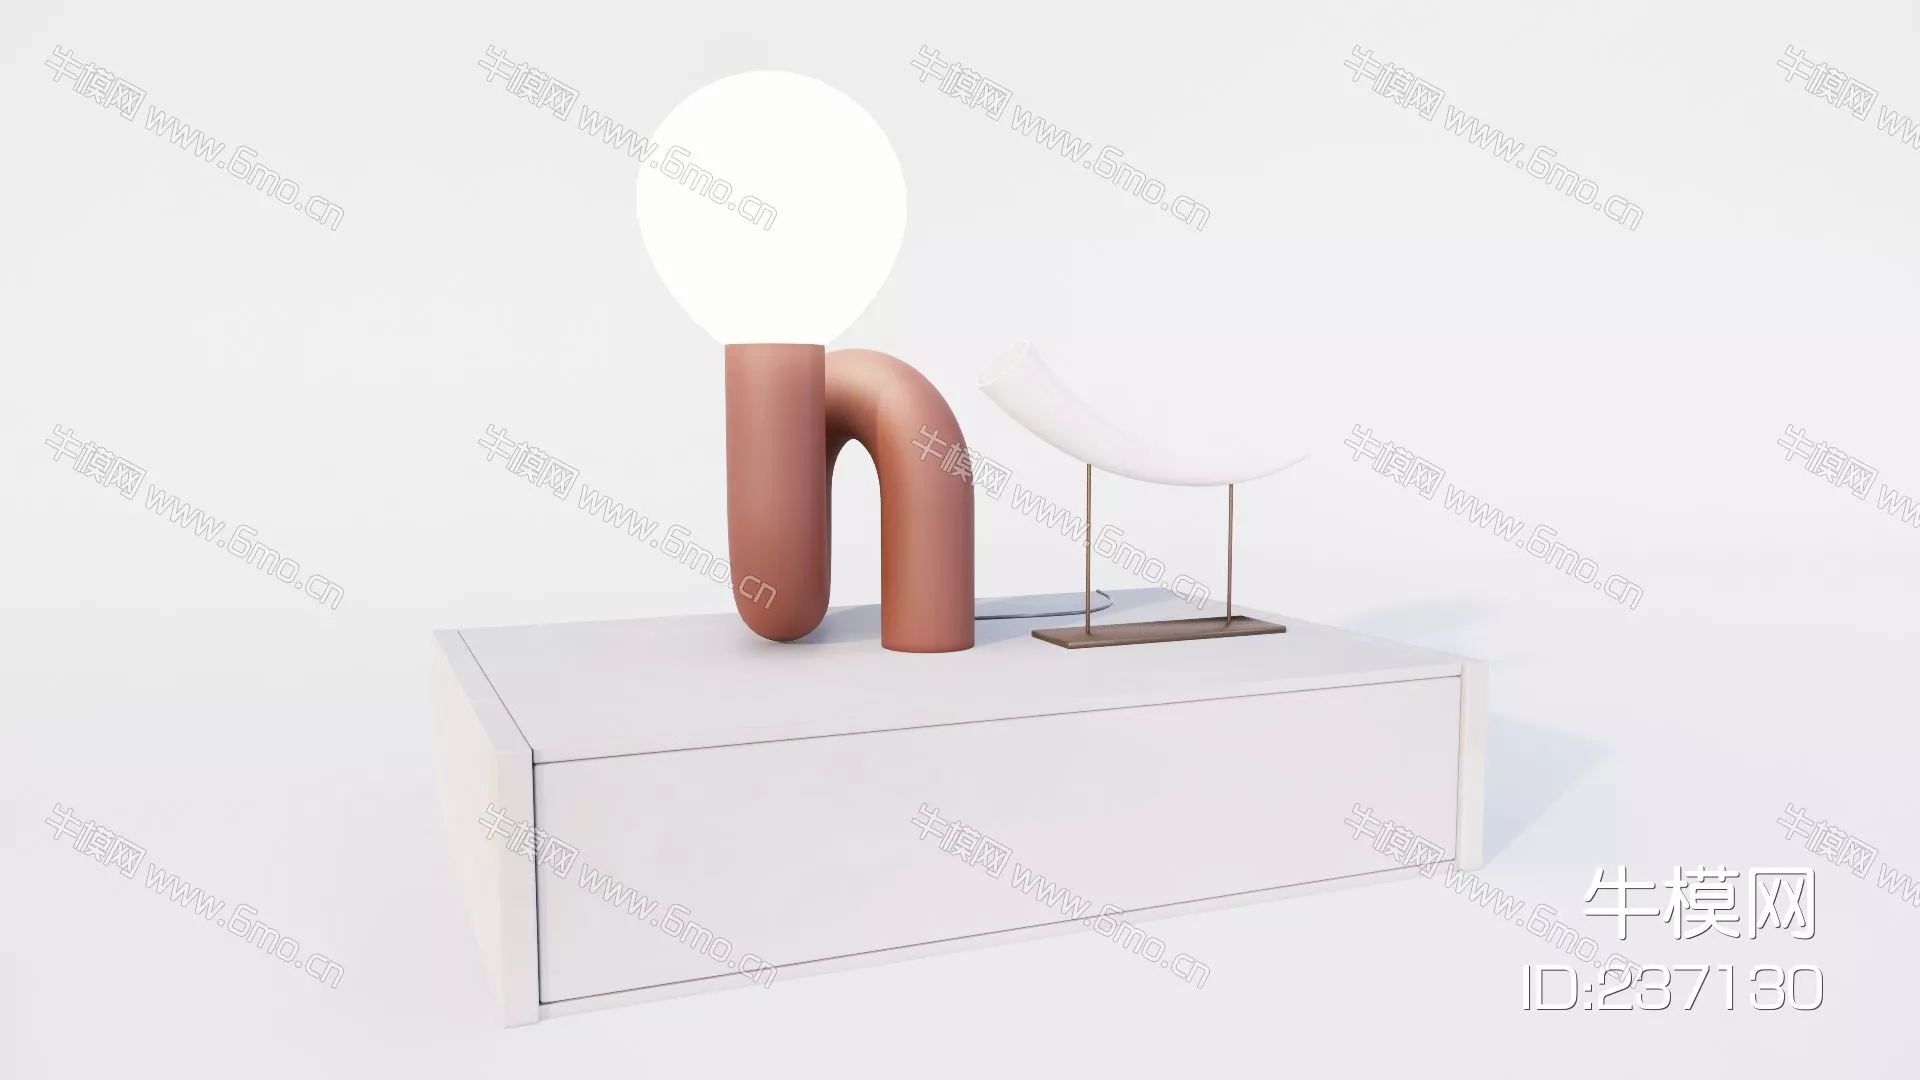 MODERN OTHER CABINET - SKETCHUP 3D MODEL - ENSCAPE - 237130